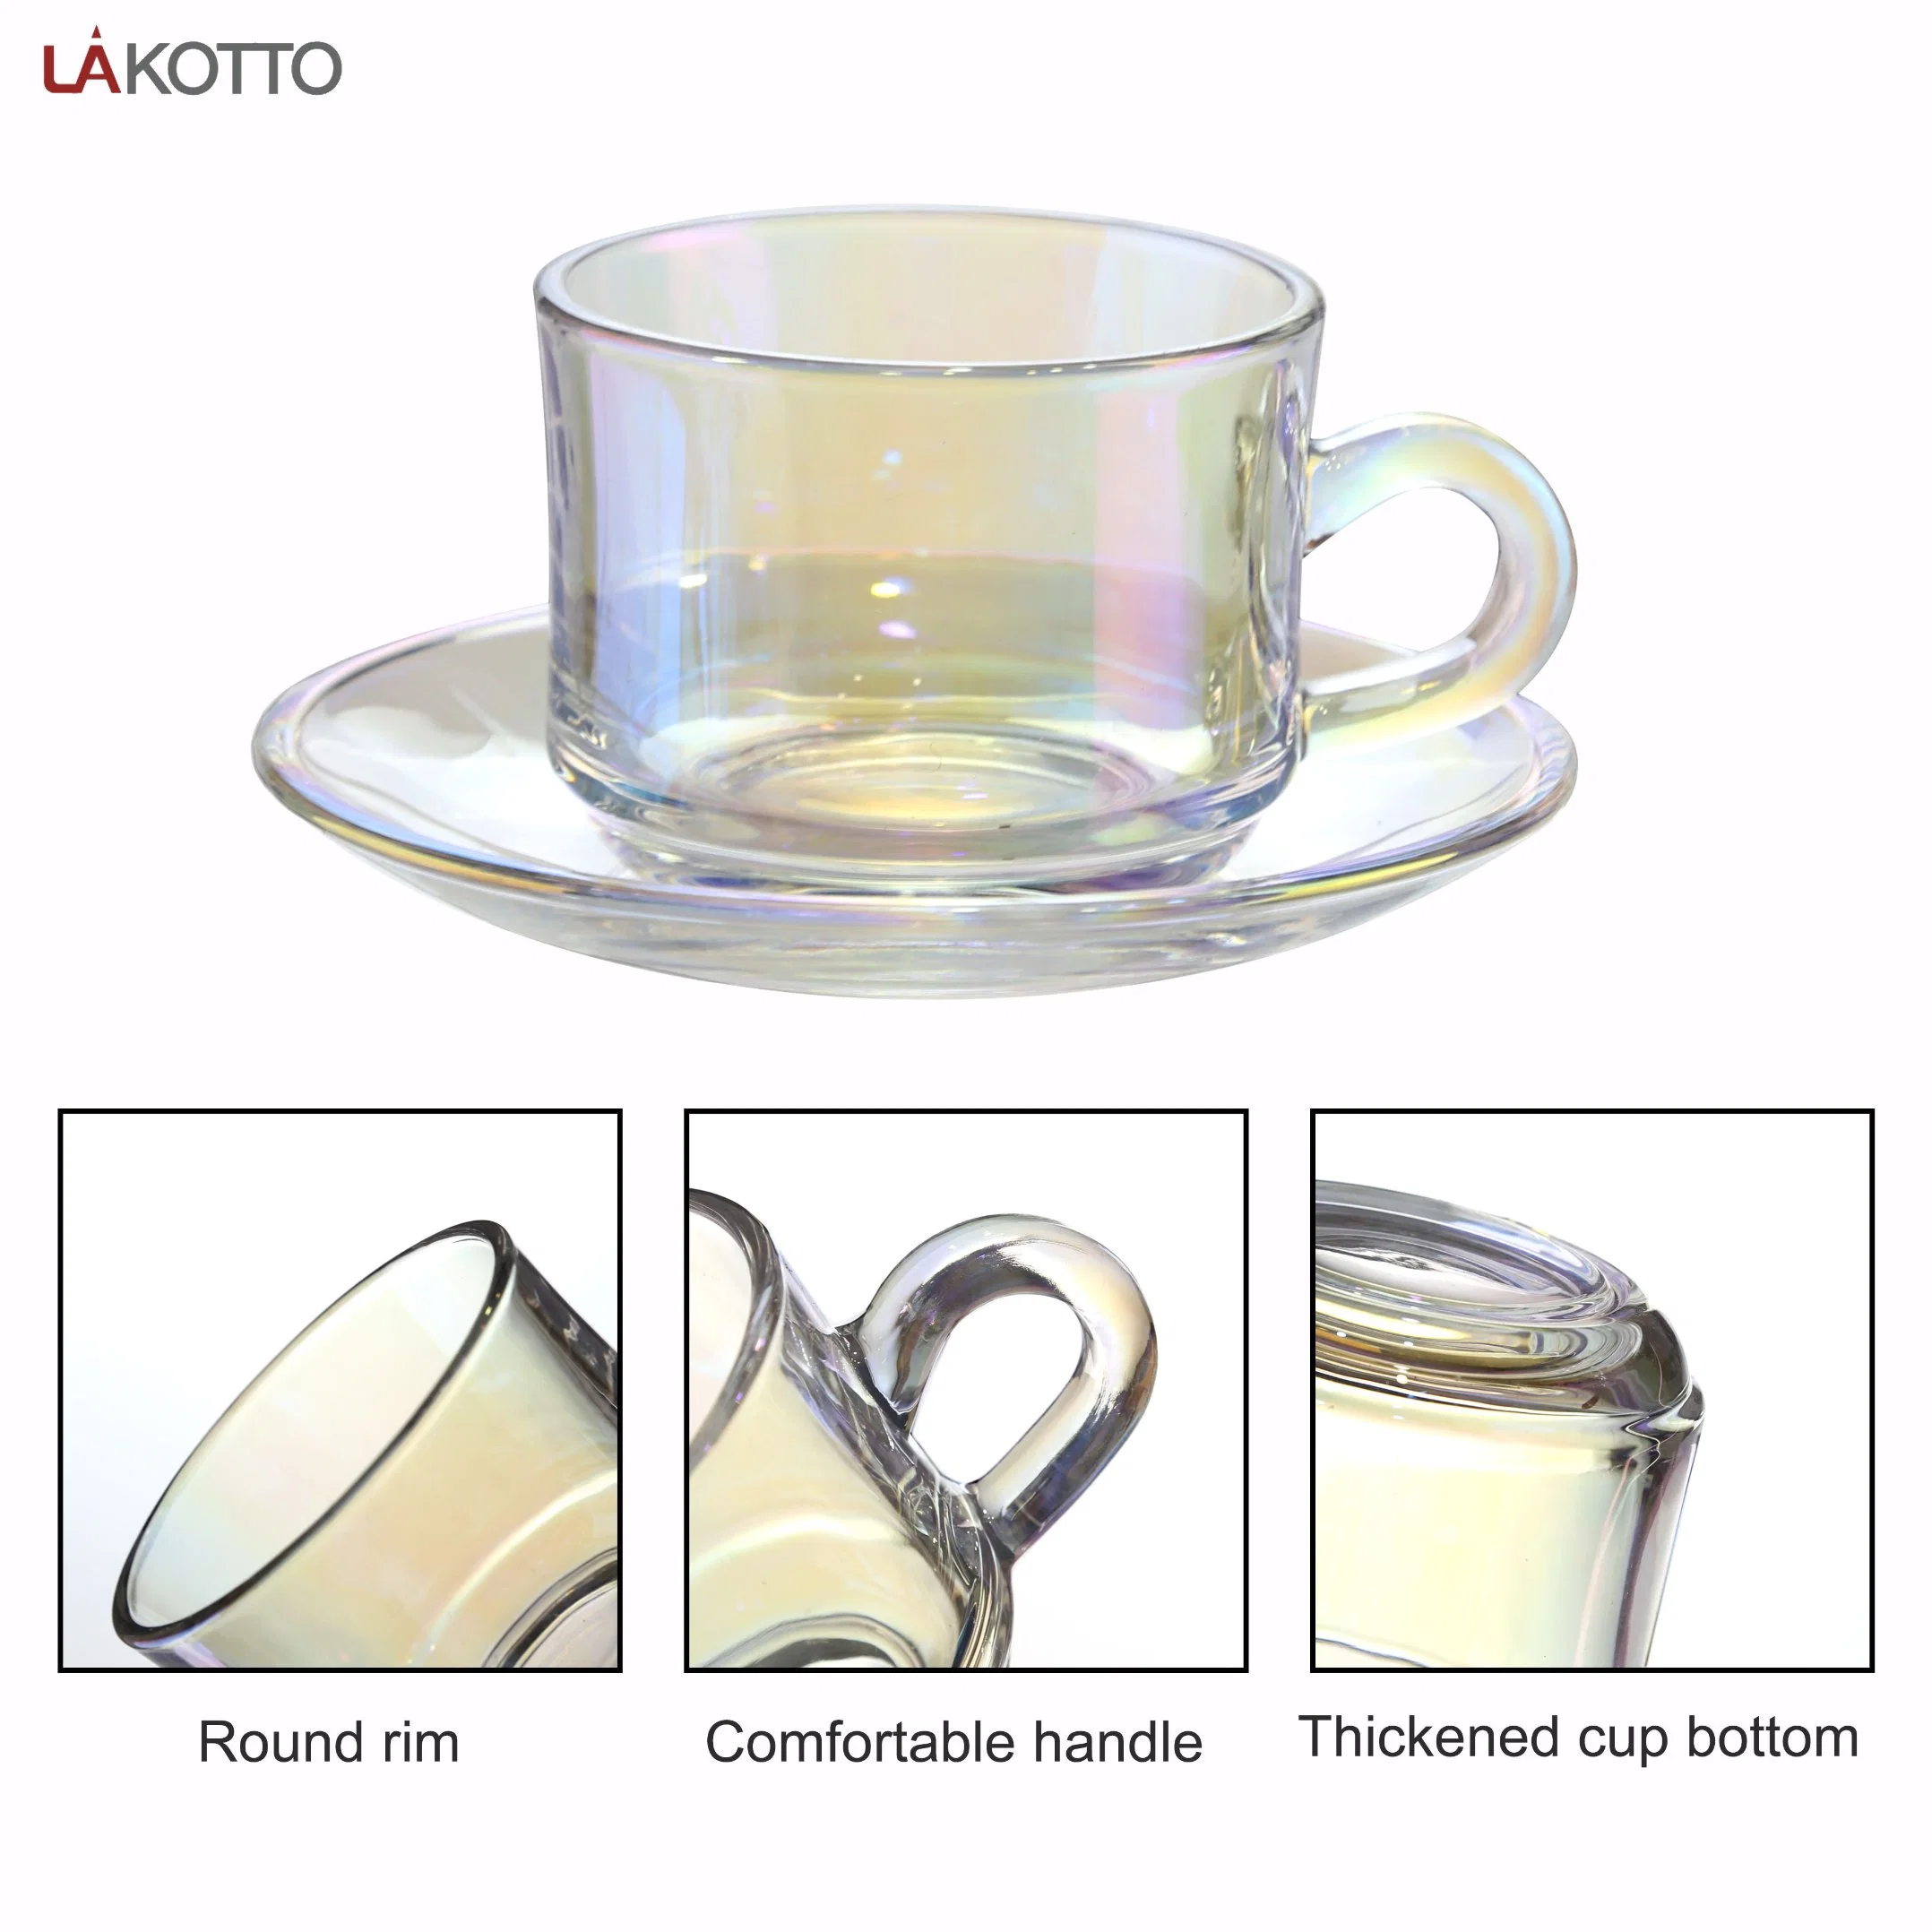 Novo Escritório de vidro Lakotto chá de vidro basculante do Café Copos Caneca Cup